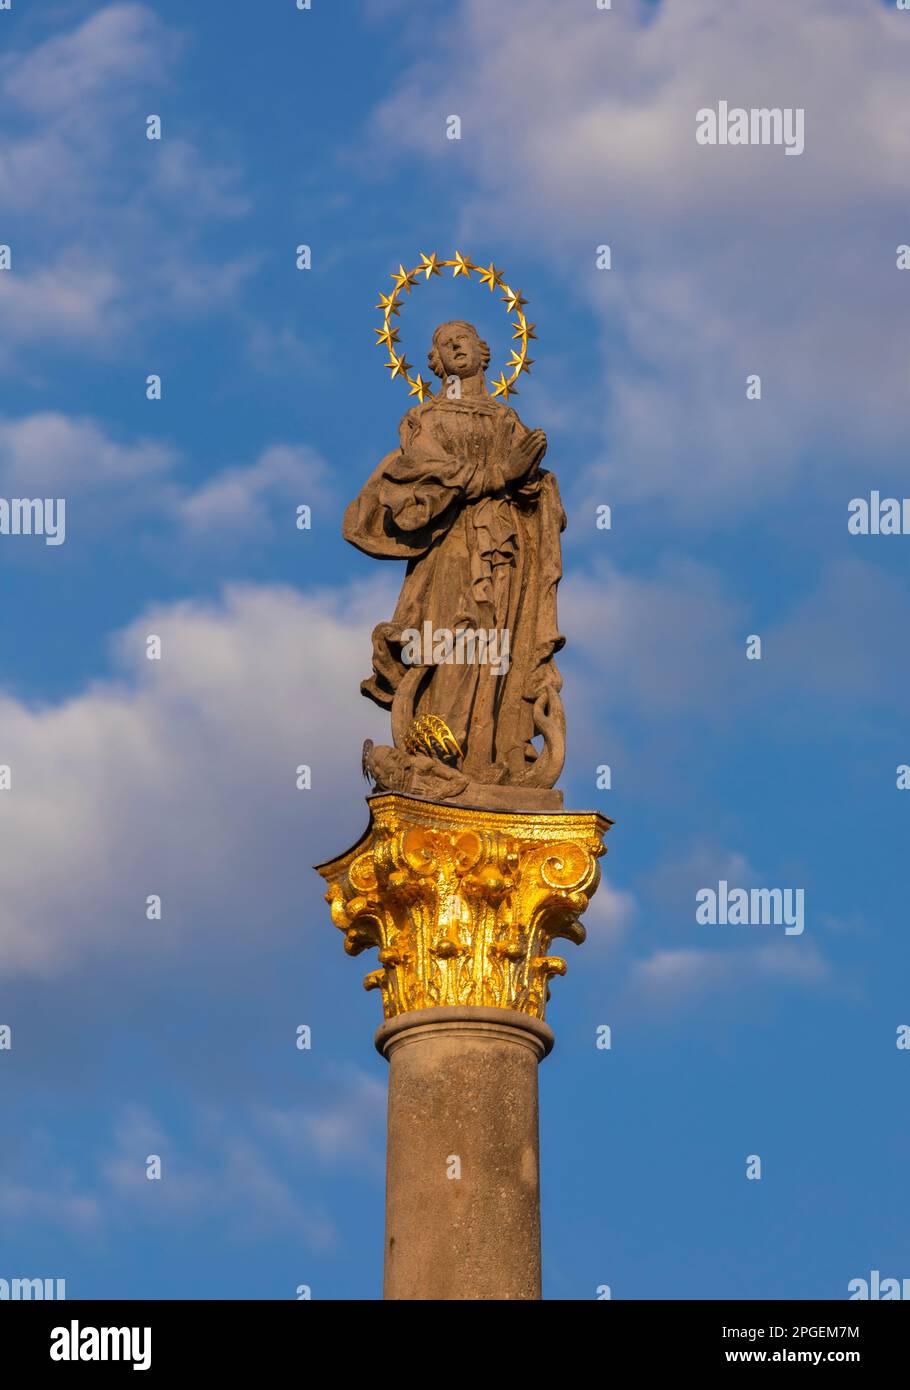 STRIBRO, REPUBBLICA CECA, EUROPA - colonna mariana, statua della Vergine Maria, in Piazza Masarykovo nel centro di Stribro. Foto Stock